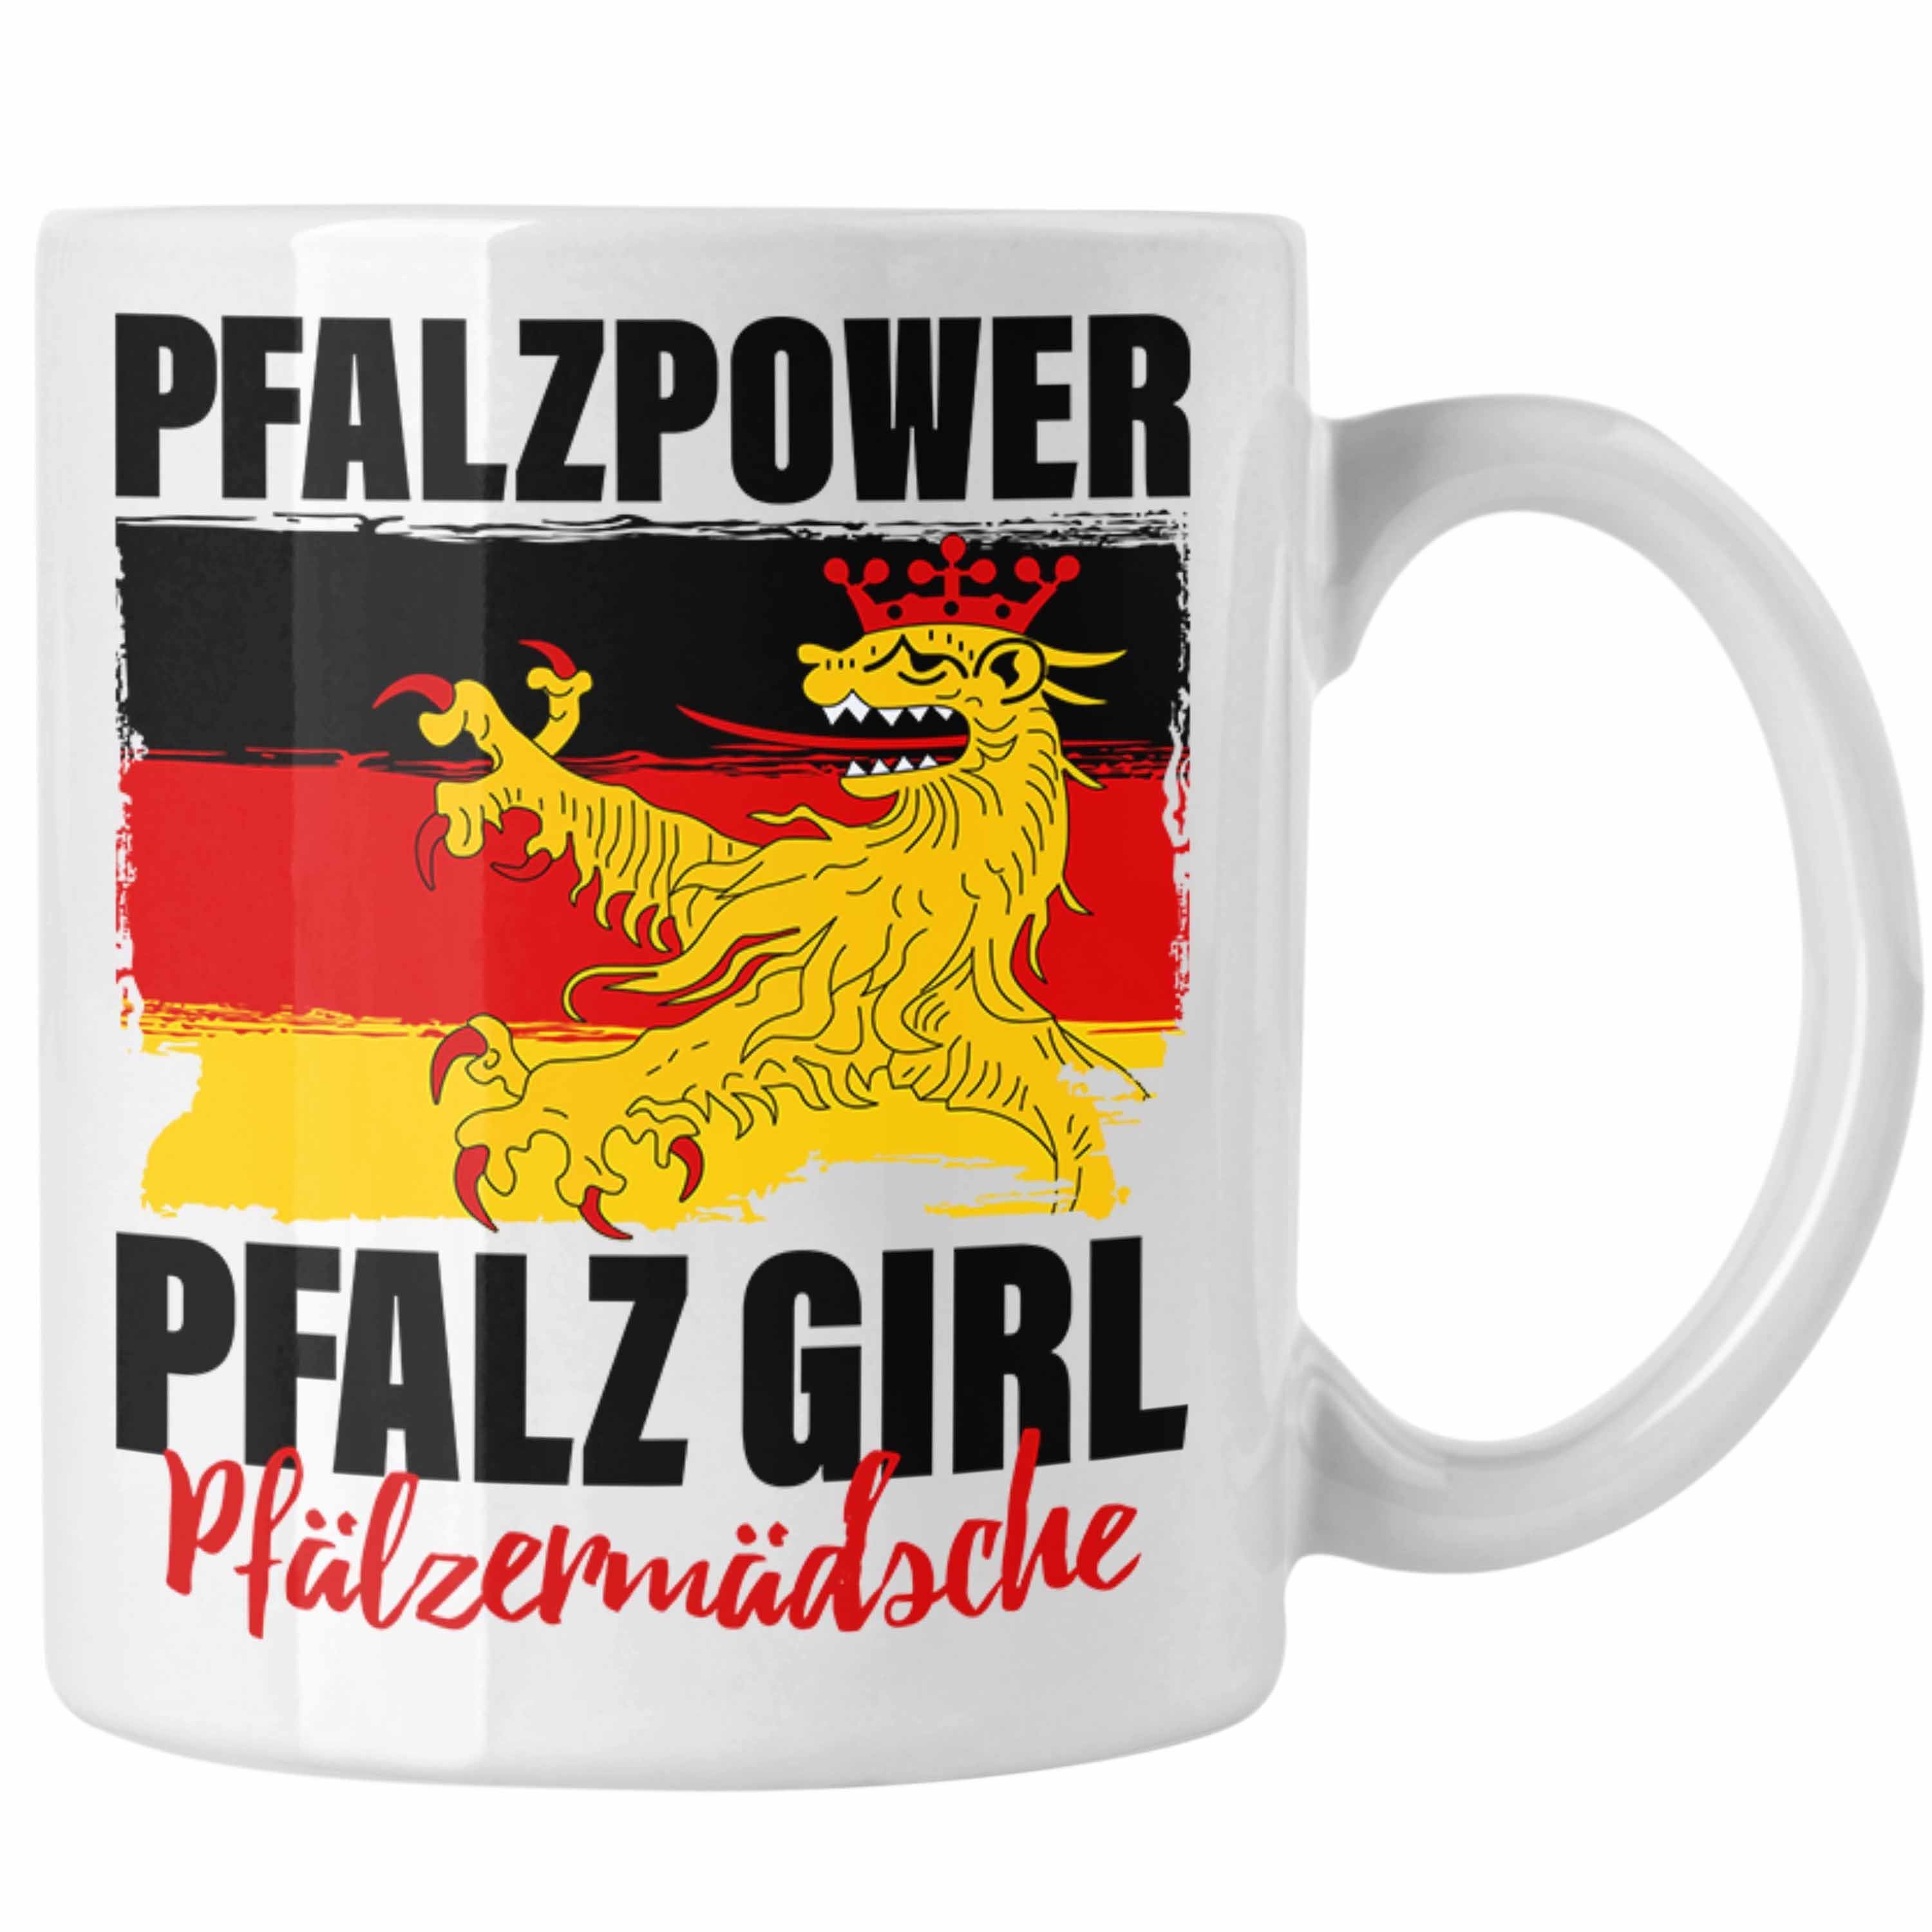 Trendation Tasse Pfalzpower Frauen Weiss Girl Pfalzmädsche Pfalz Geschenk Tasse